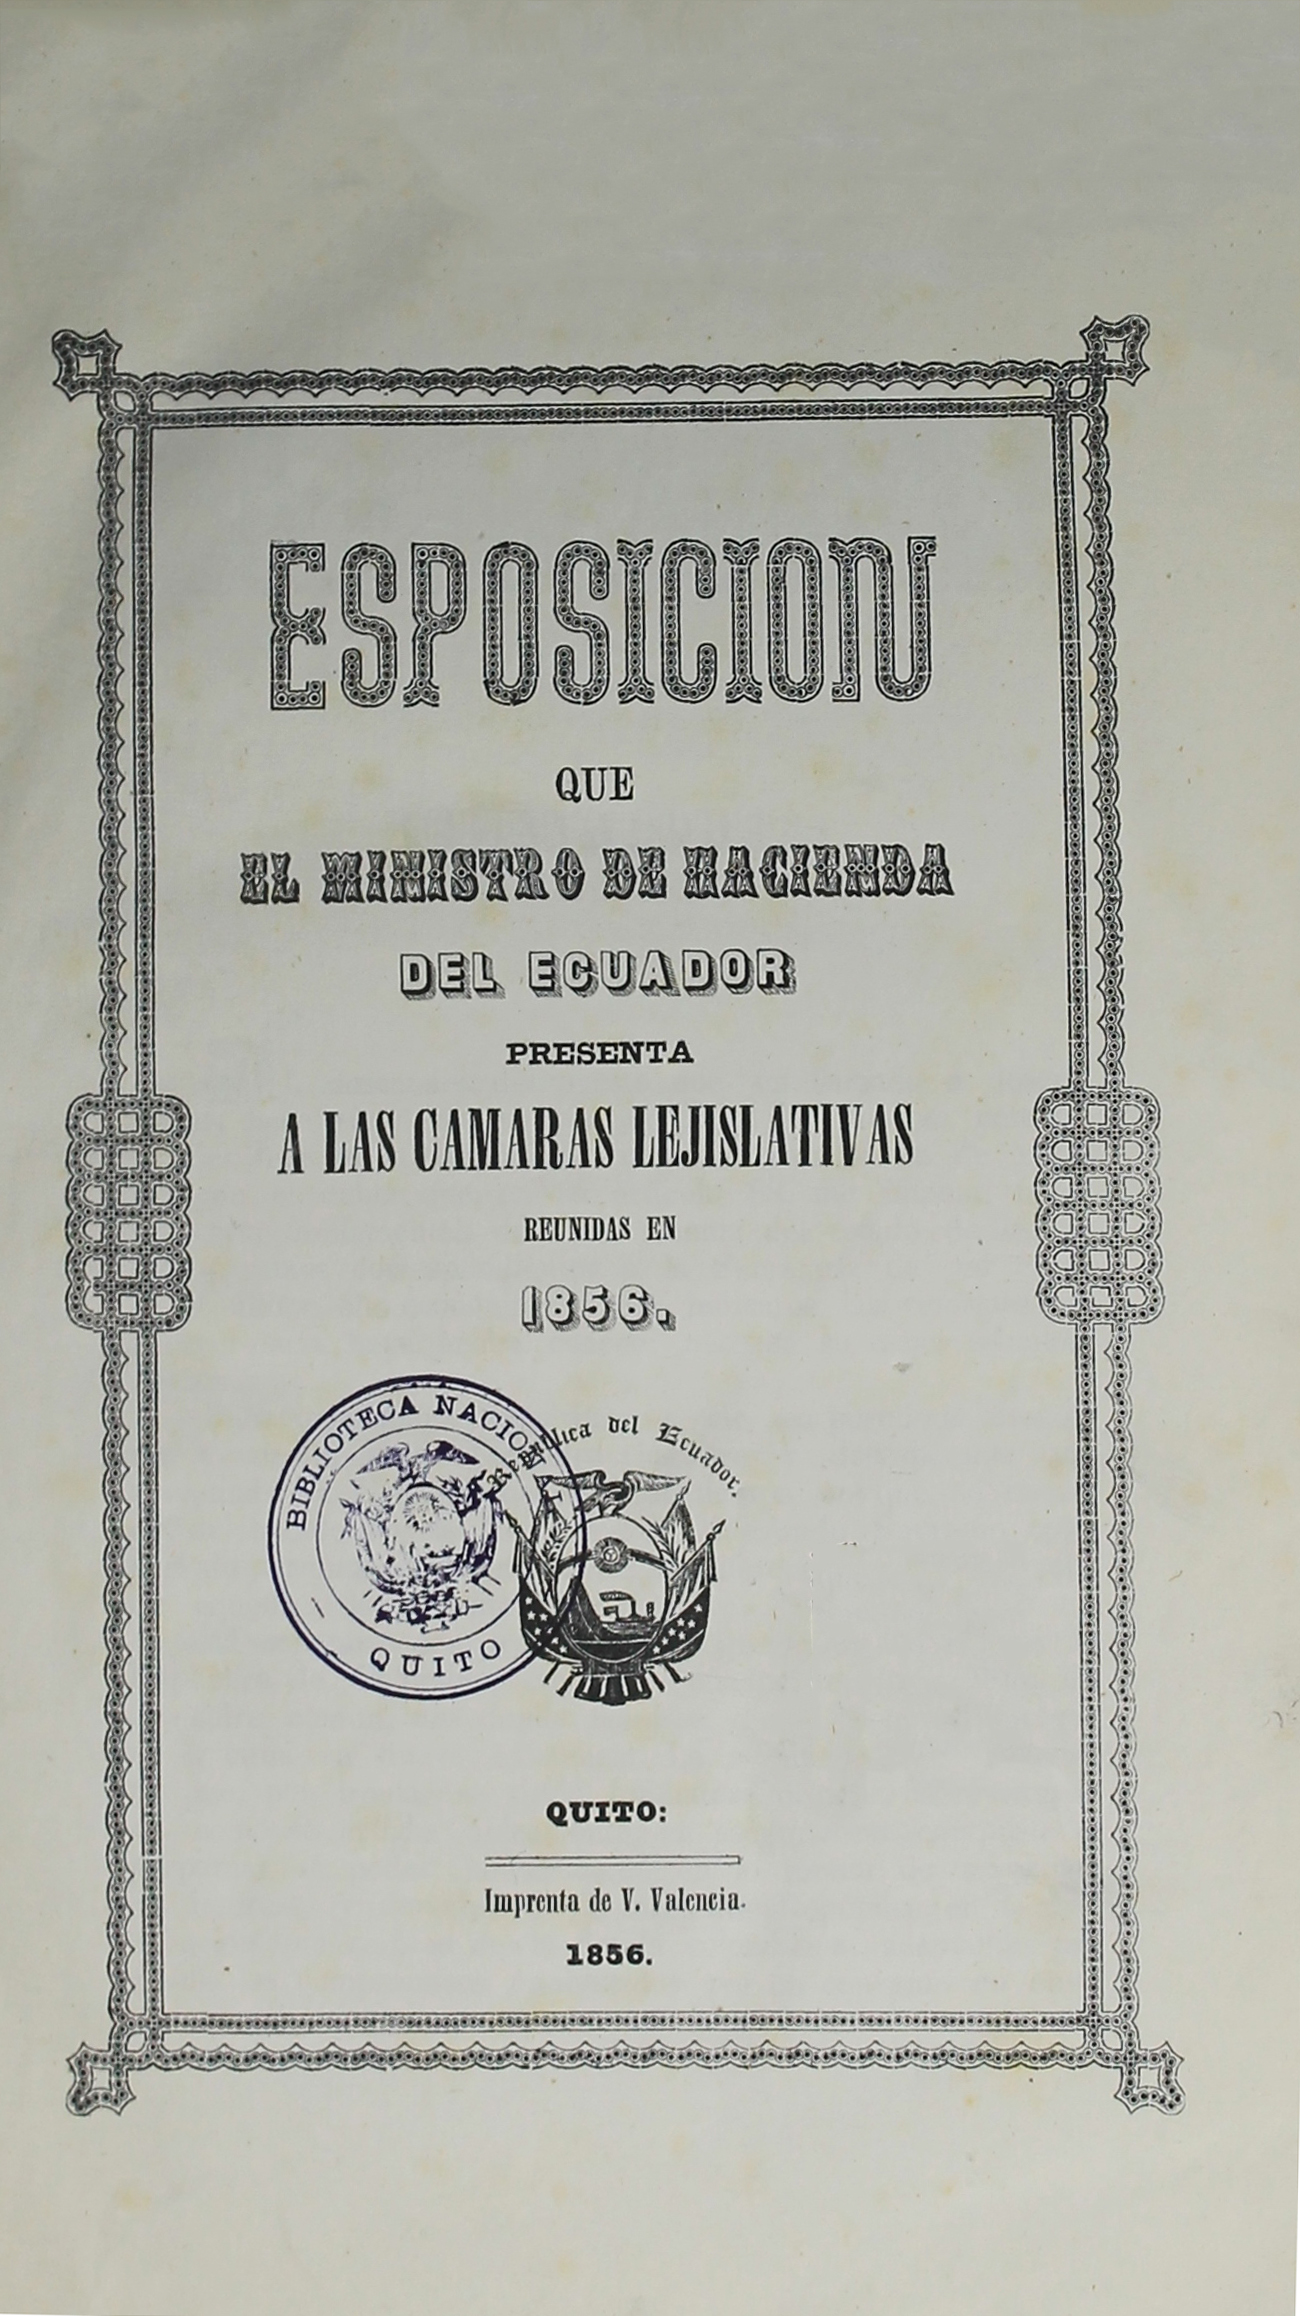 Esposición que el Ministro de Hacienda del Ecuador presenta a las Cámaras Lejislativas reunidas en 1856.